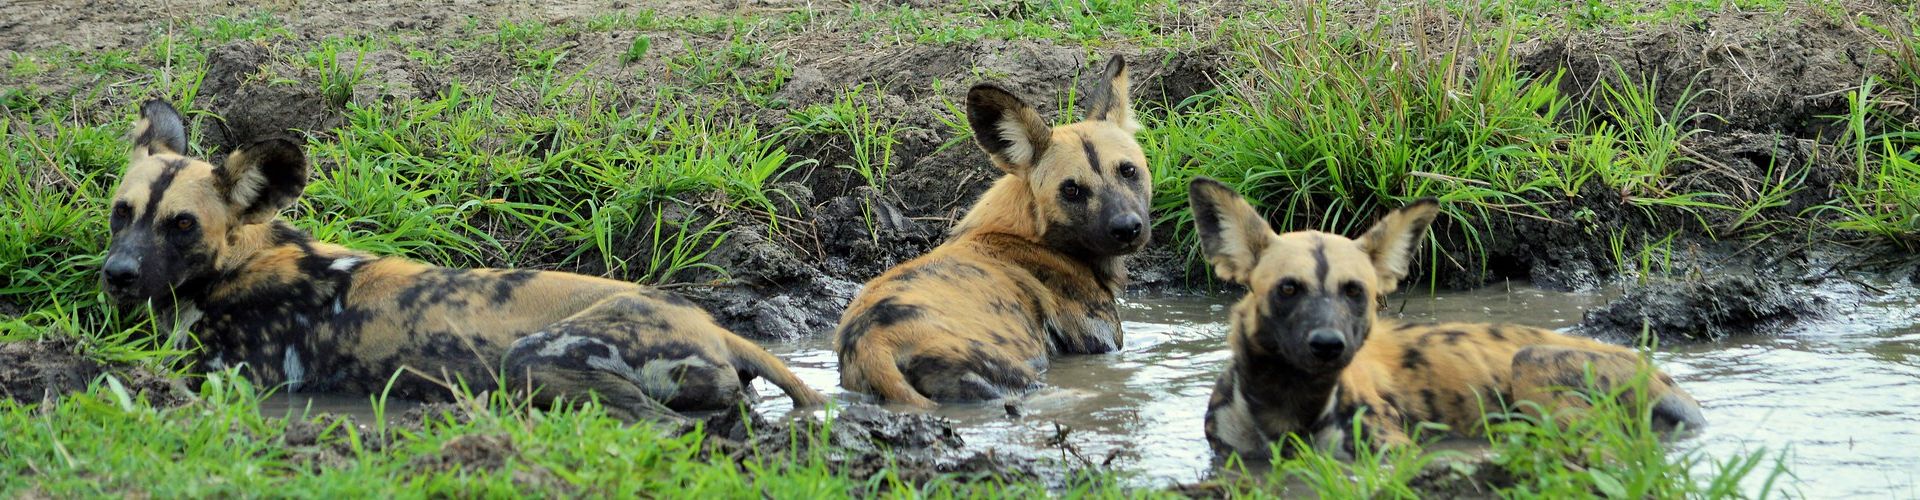 African wild dogs in Tanzania